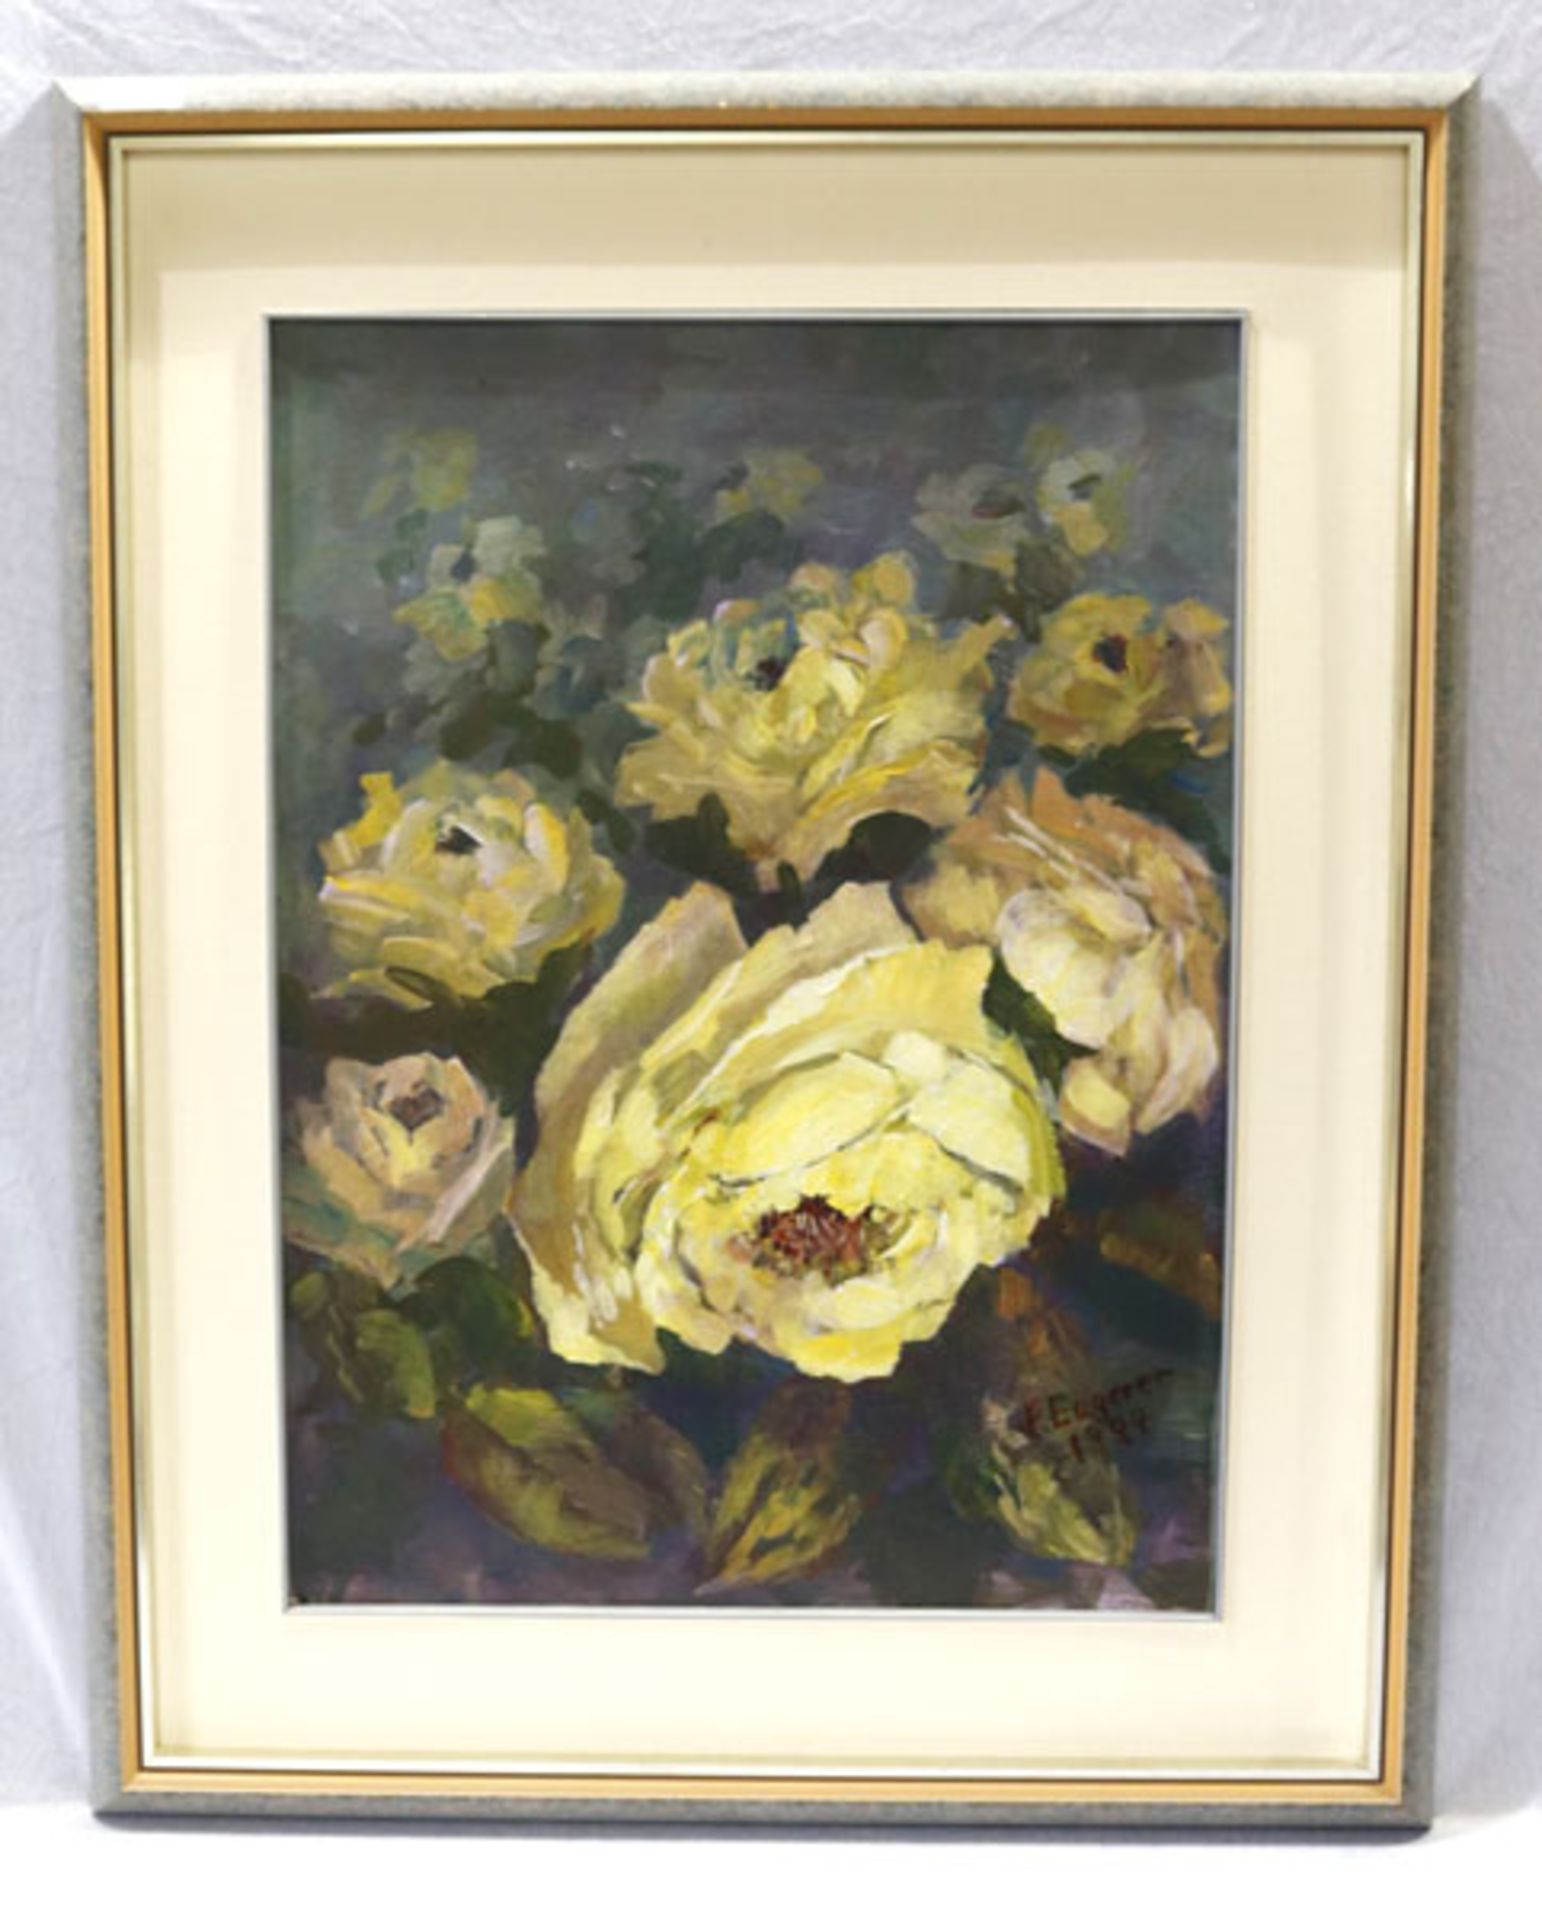 Gemälde ÖL/Malkarton 'Gelbe Rosen', signiert H. (Hans) Engerer, datiert 1994, Maler und Bildhauer, *